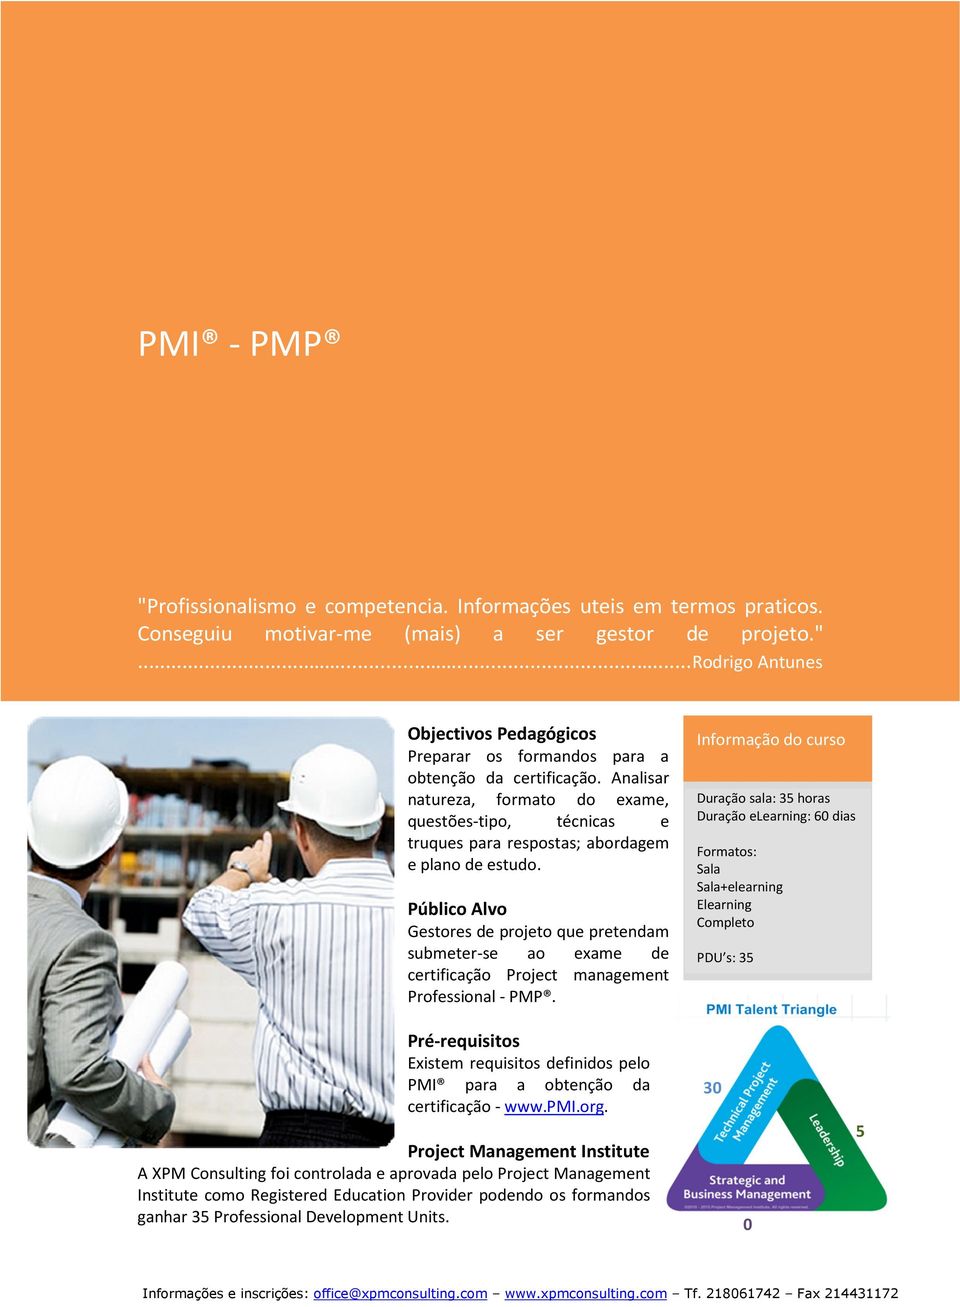 Público Alvo Gestores de projeto que pretendam submeter-se ao exame de certificação Project management Professional - PMP.